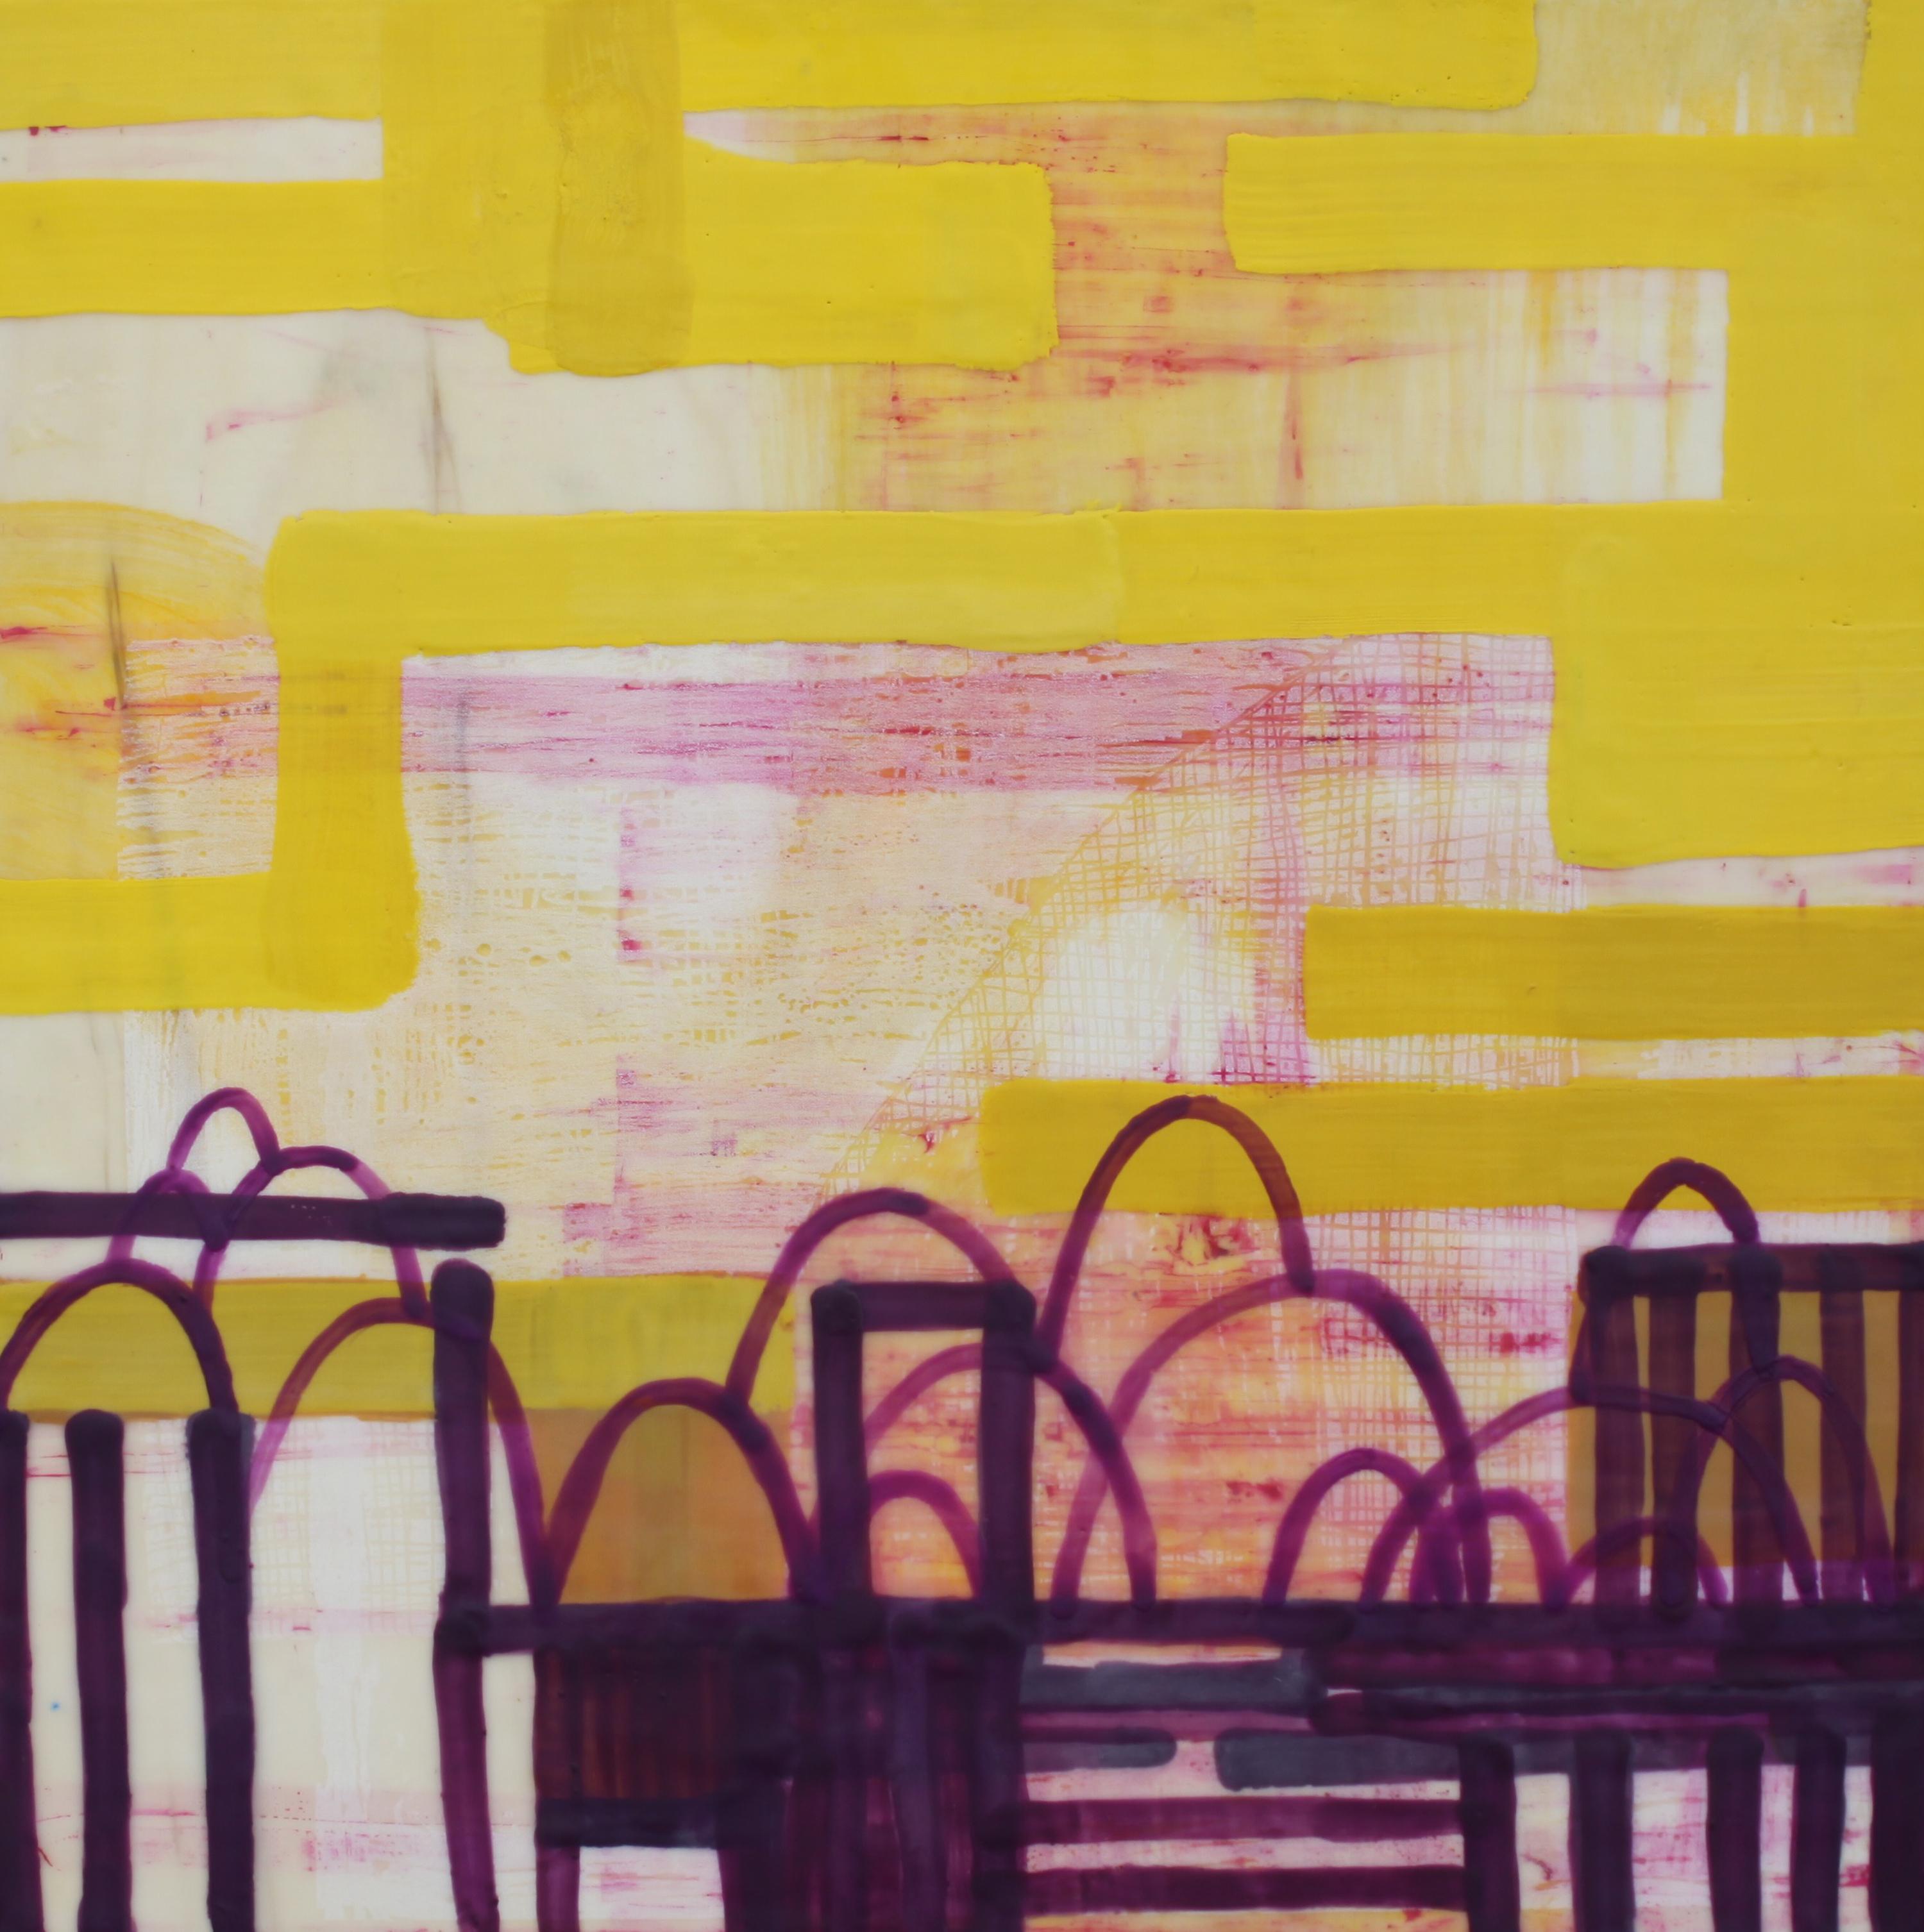 Abstract Painting Amber George - Peinture à l'encaustique abstraite jaune, rose et violette « Coming to a Rest » sur panneau